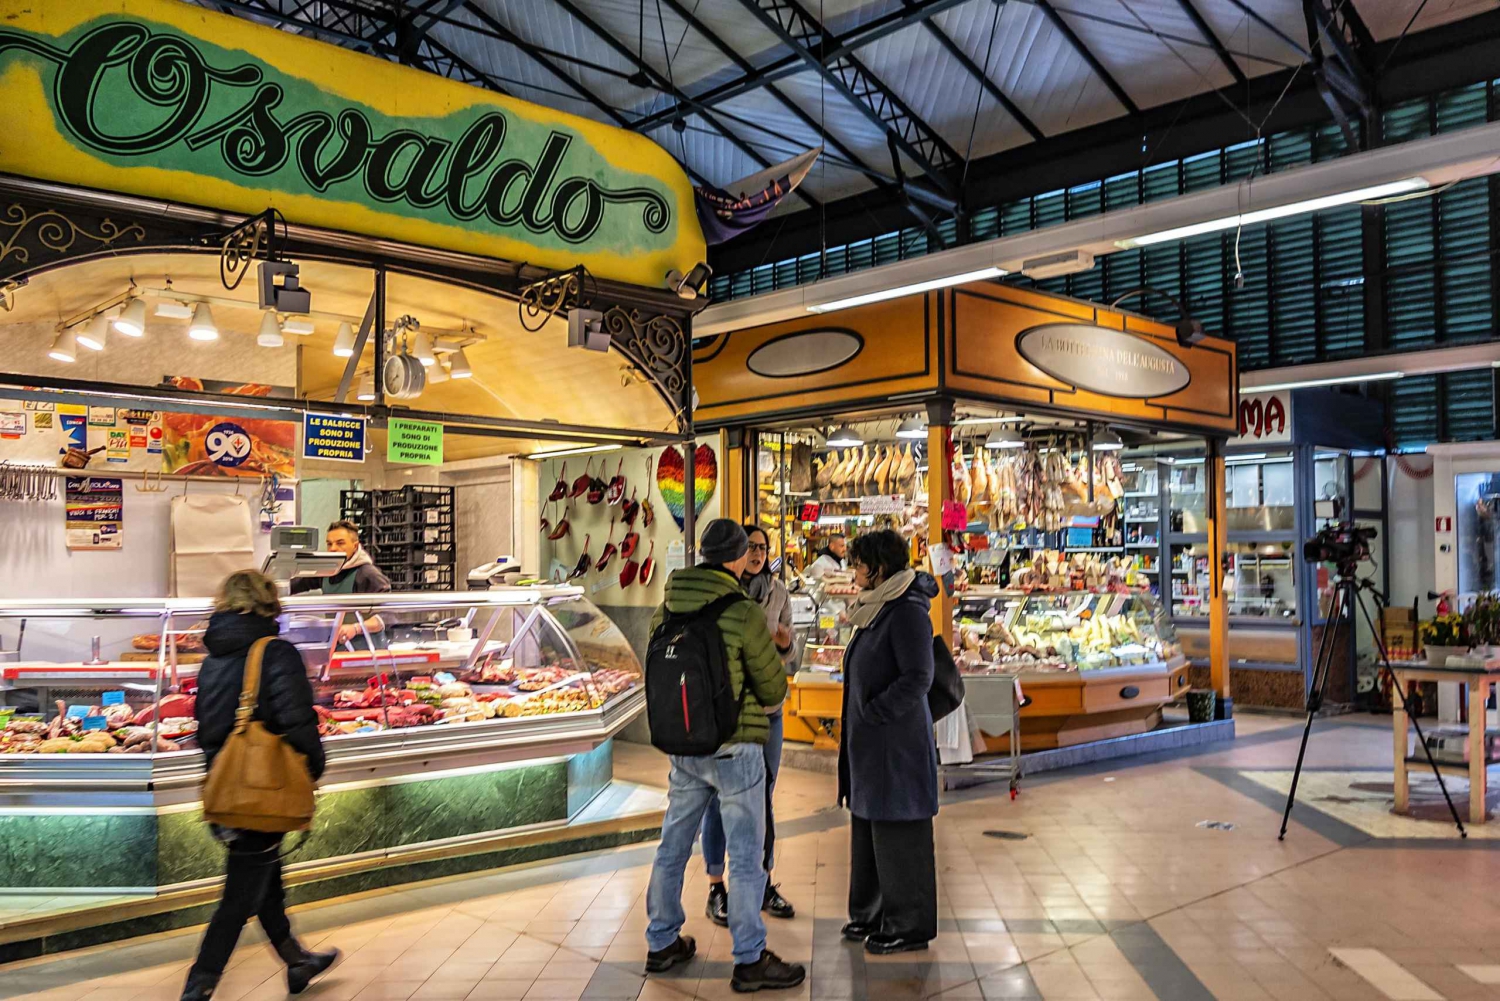 Firenze: Guidet tur til Sant'Ambrogio-markedet med smagsprøver